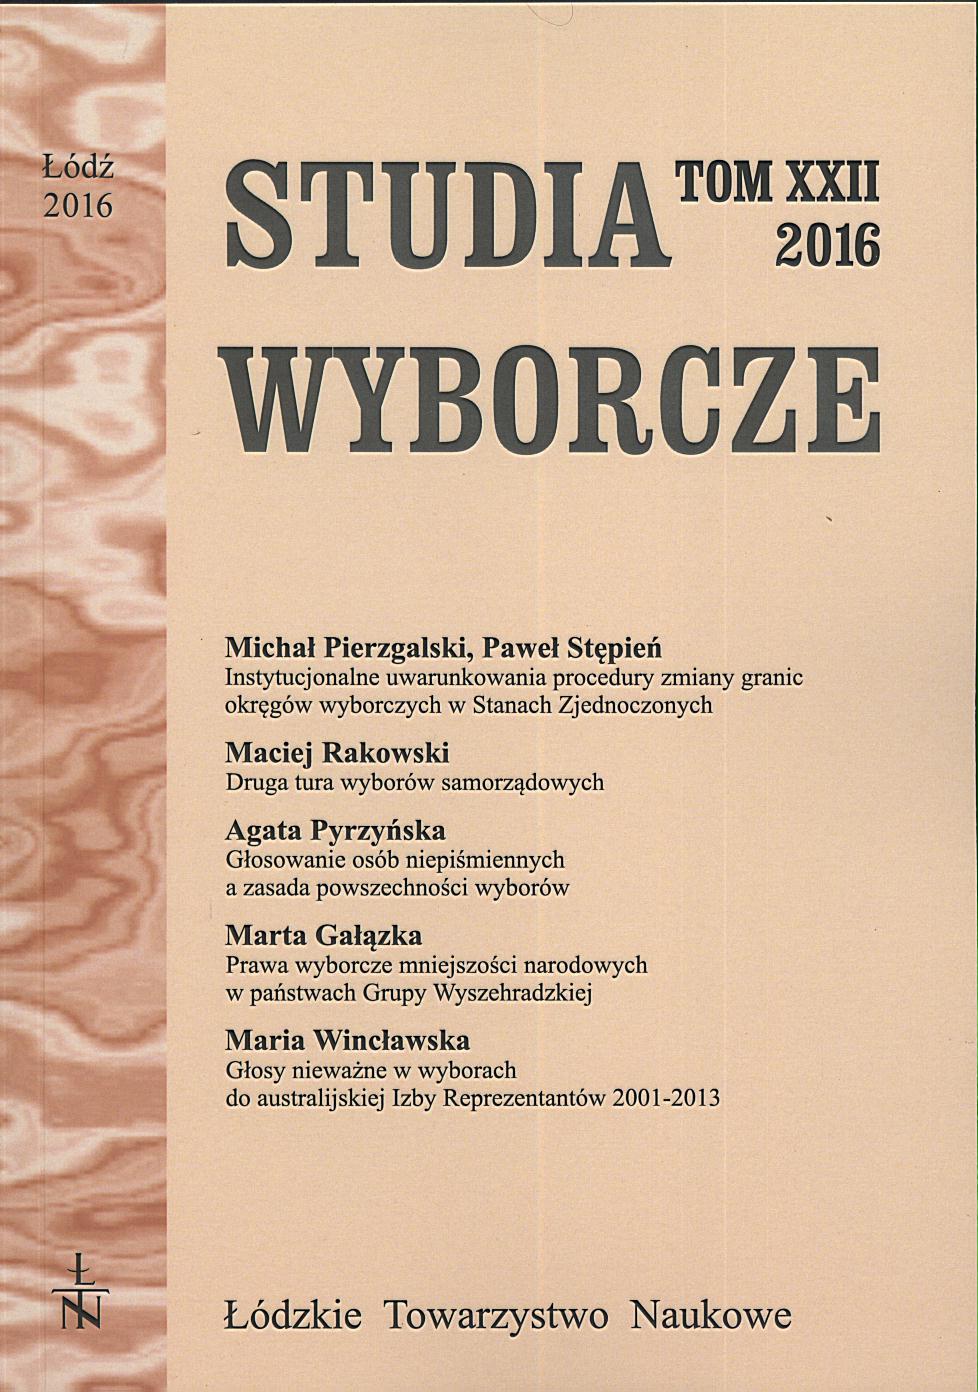 Review: Anna Rakowska-Trela, Kampania wyborcza w regulacji prawnej i w praktyce, Łódź 2015, ss. 477 Cover Image